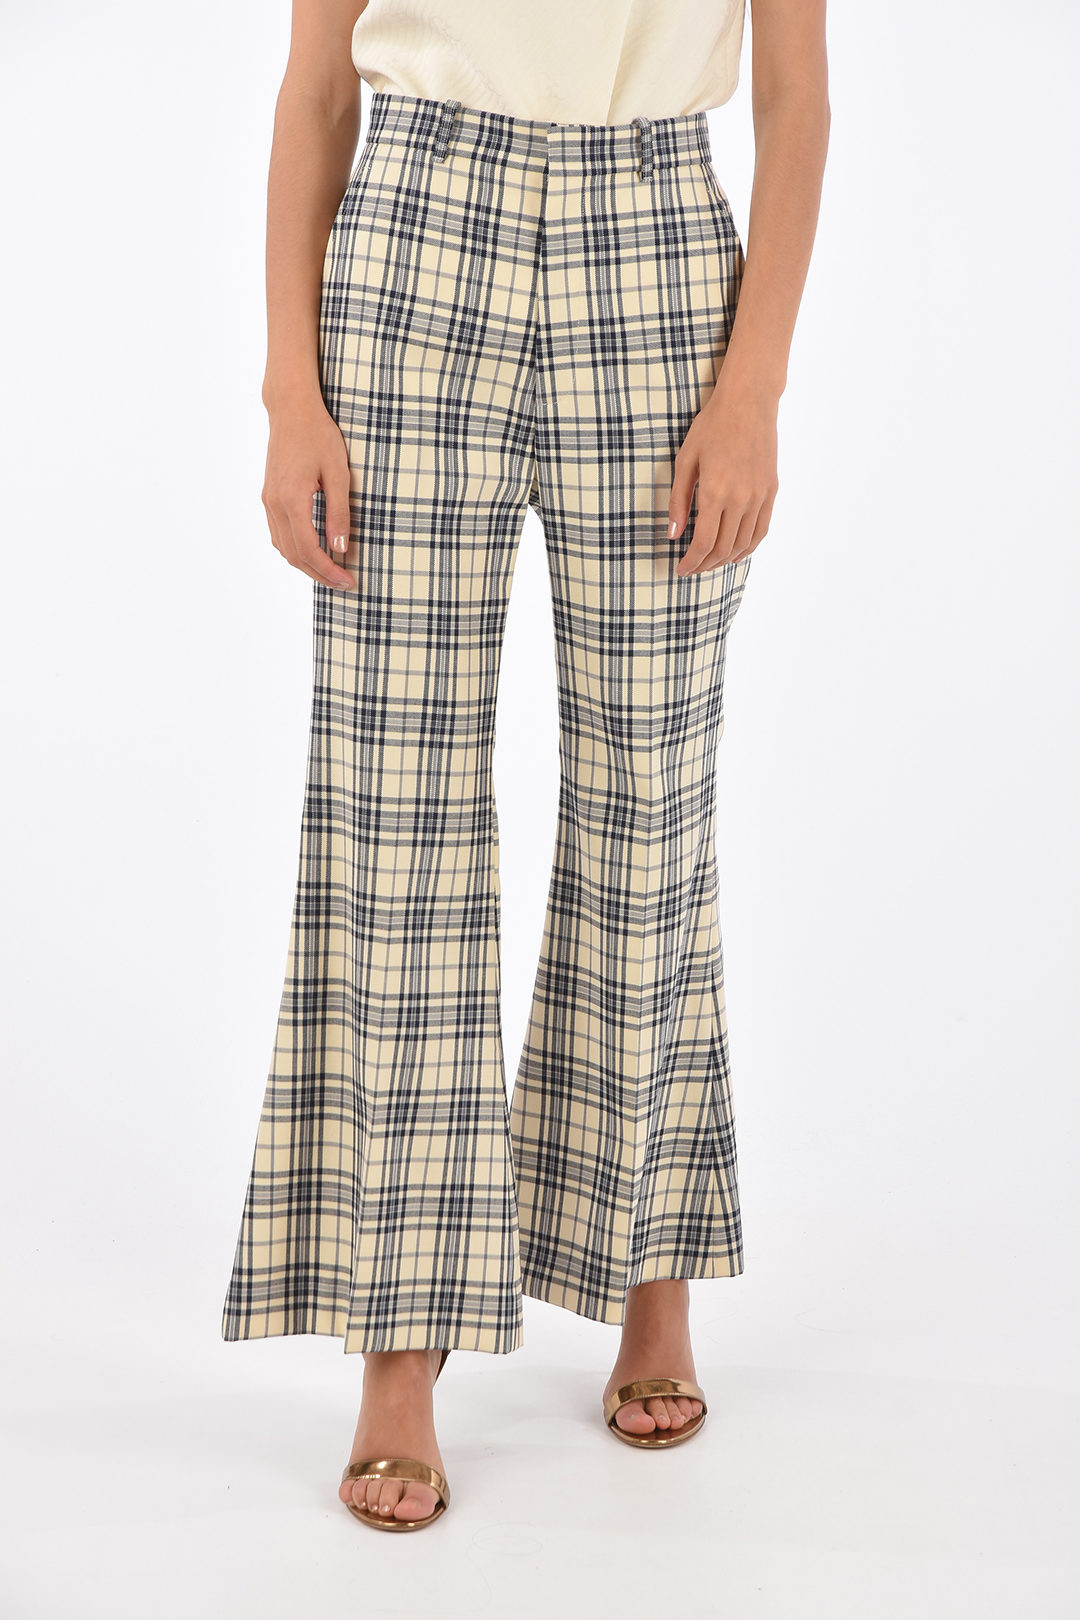 New! Gucci Tartan Wool Kilt Skirt Green Plaid Womens Size 6 US 42 IT MSRP  $2015 | eBay